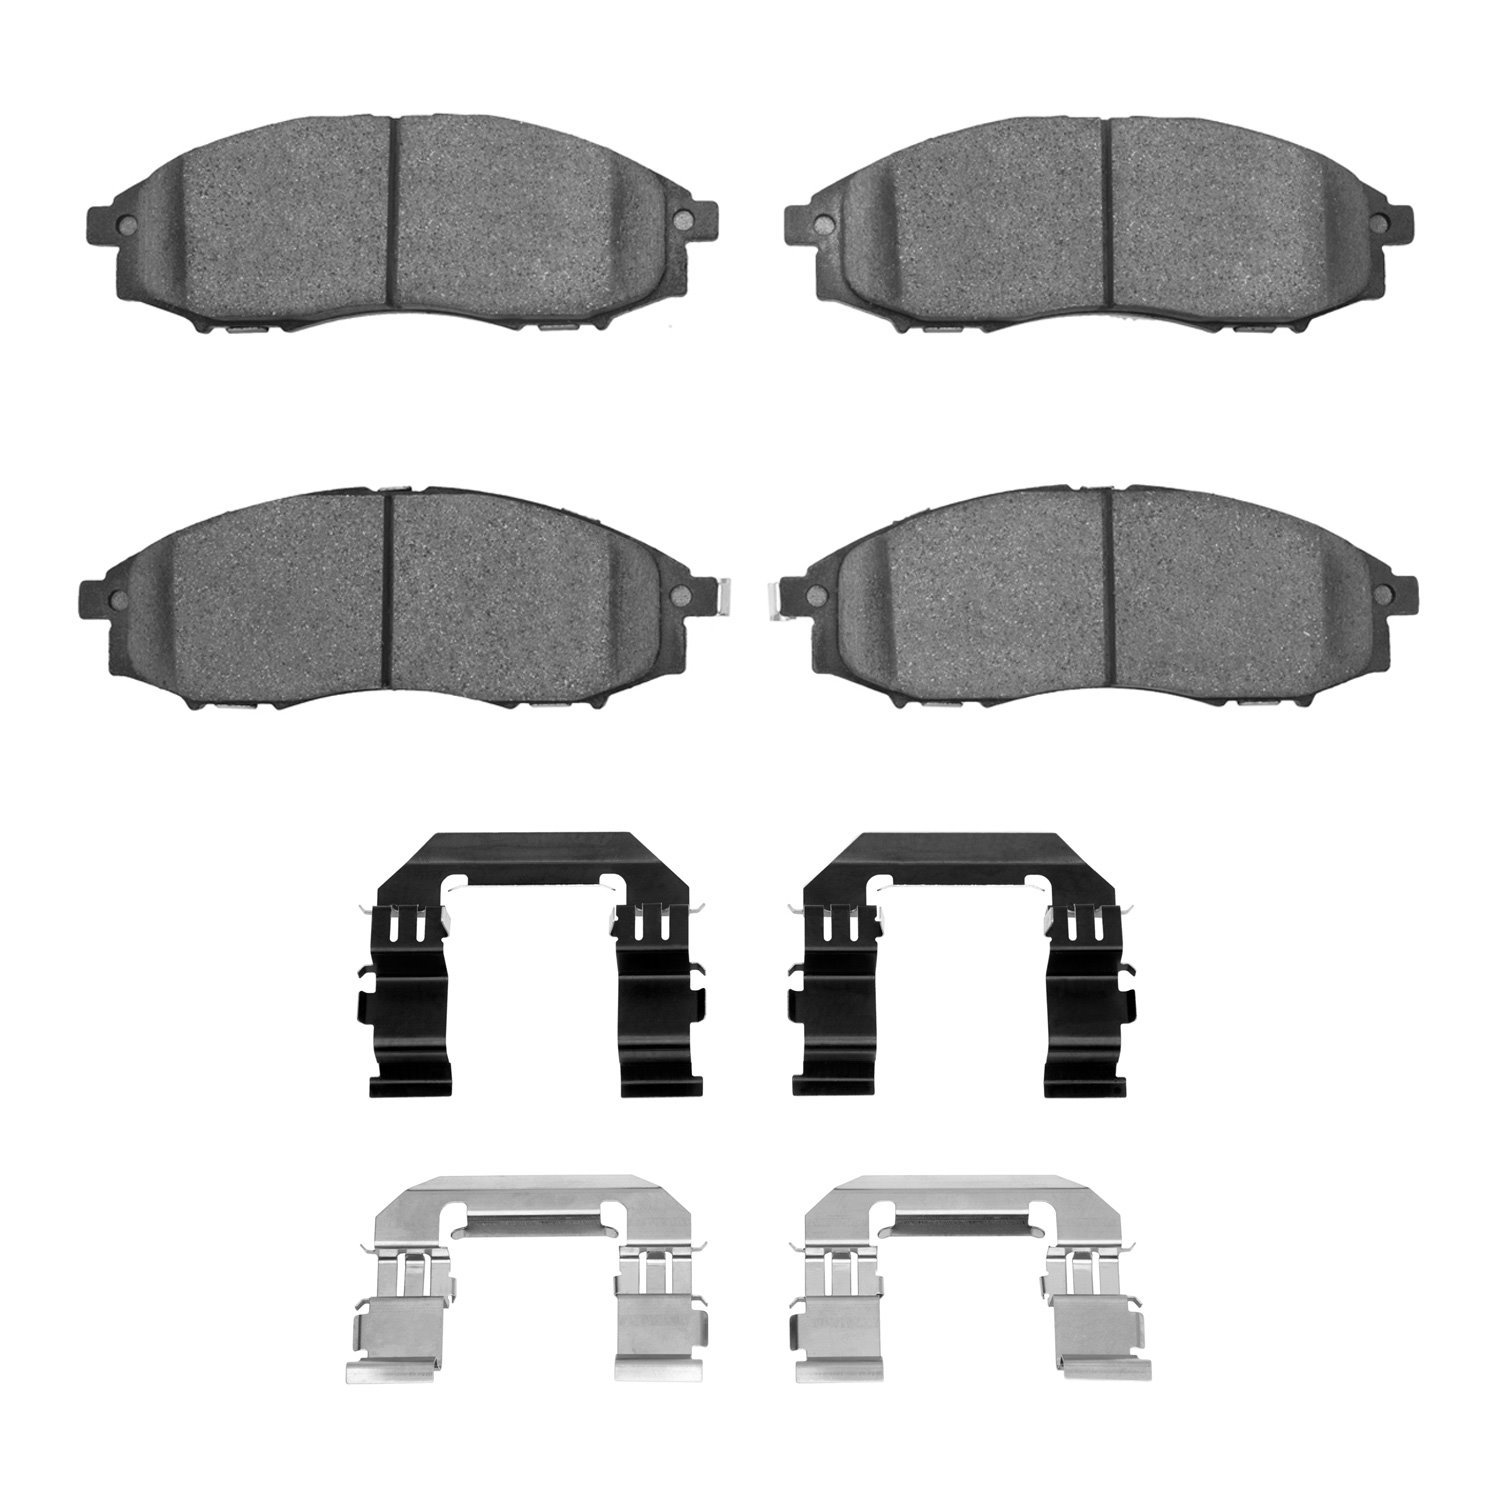 1310-0830-01 3000-Series Ceramic Brake Pads & Hardware Kit, 2000-2004 Infiniti/Nissan, Position: Front